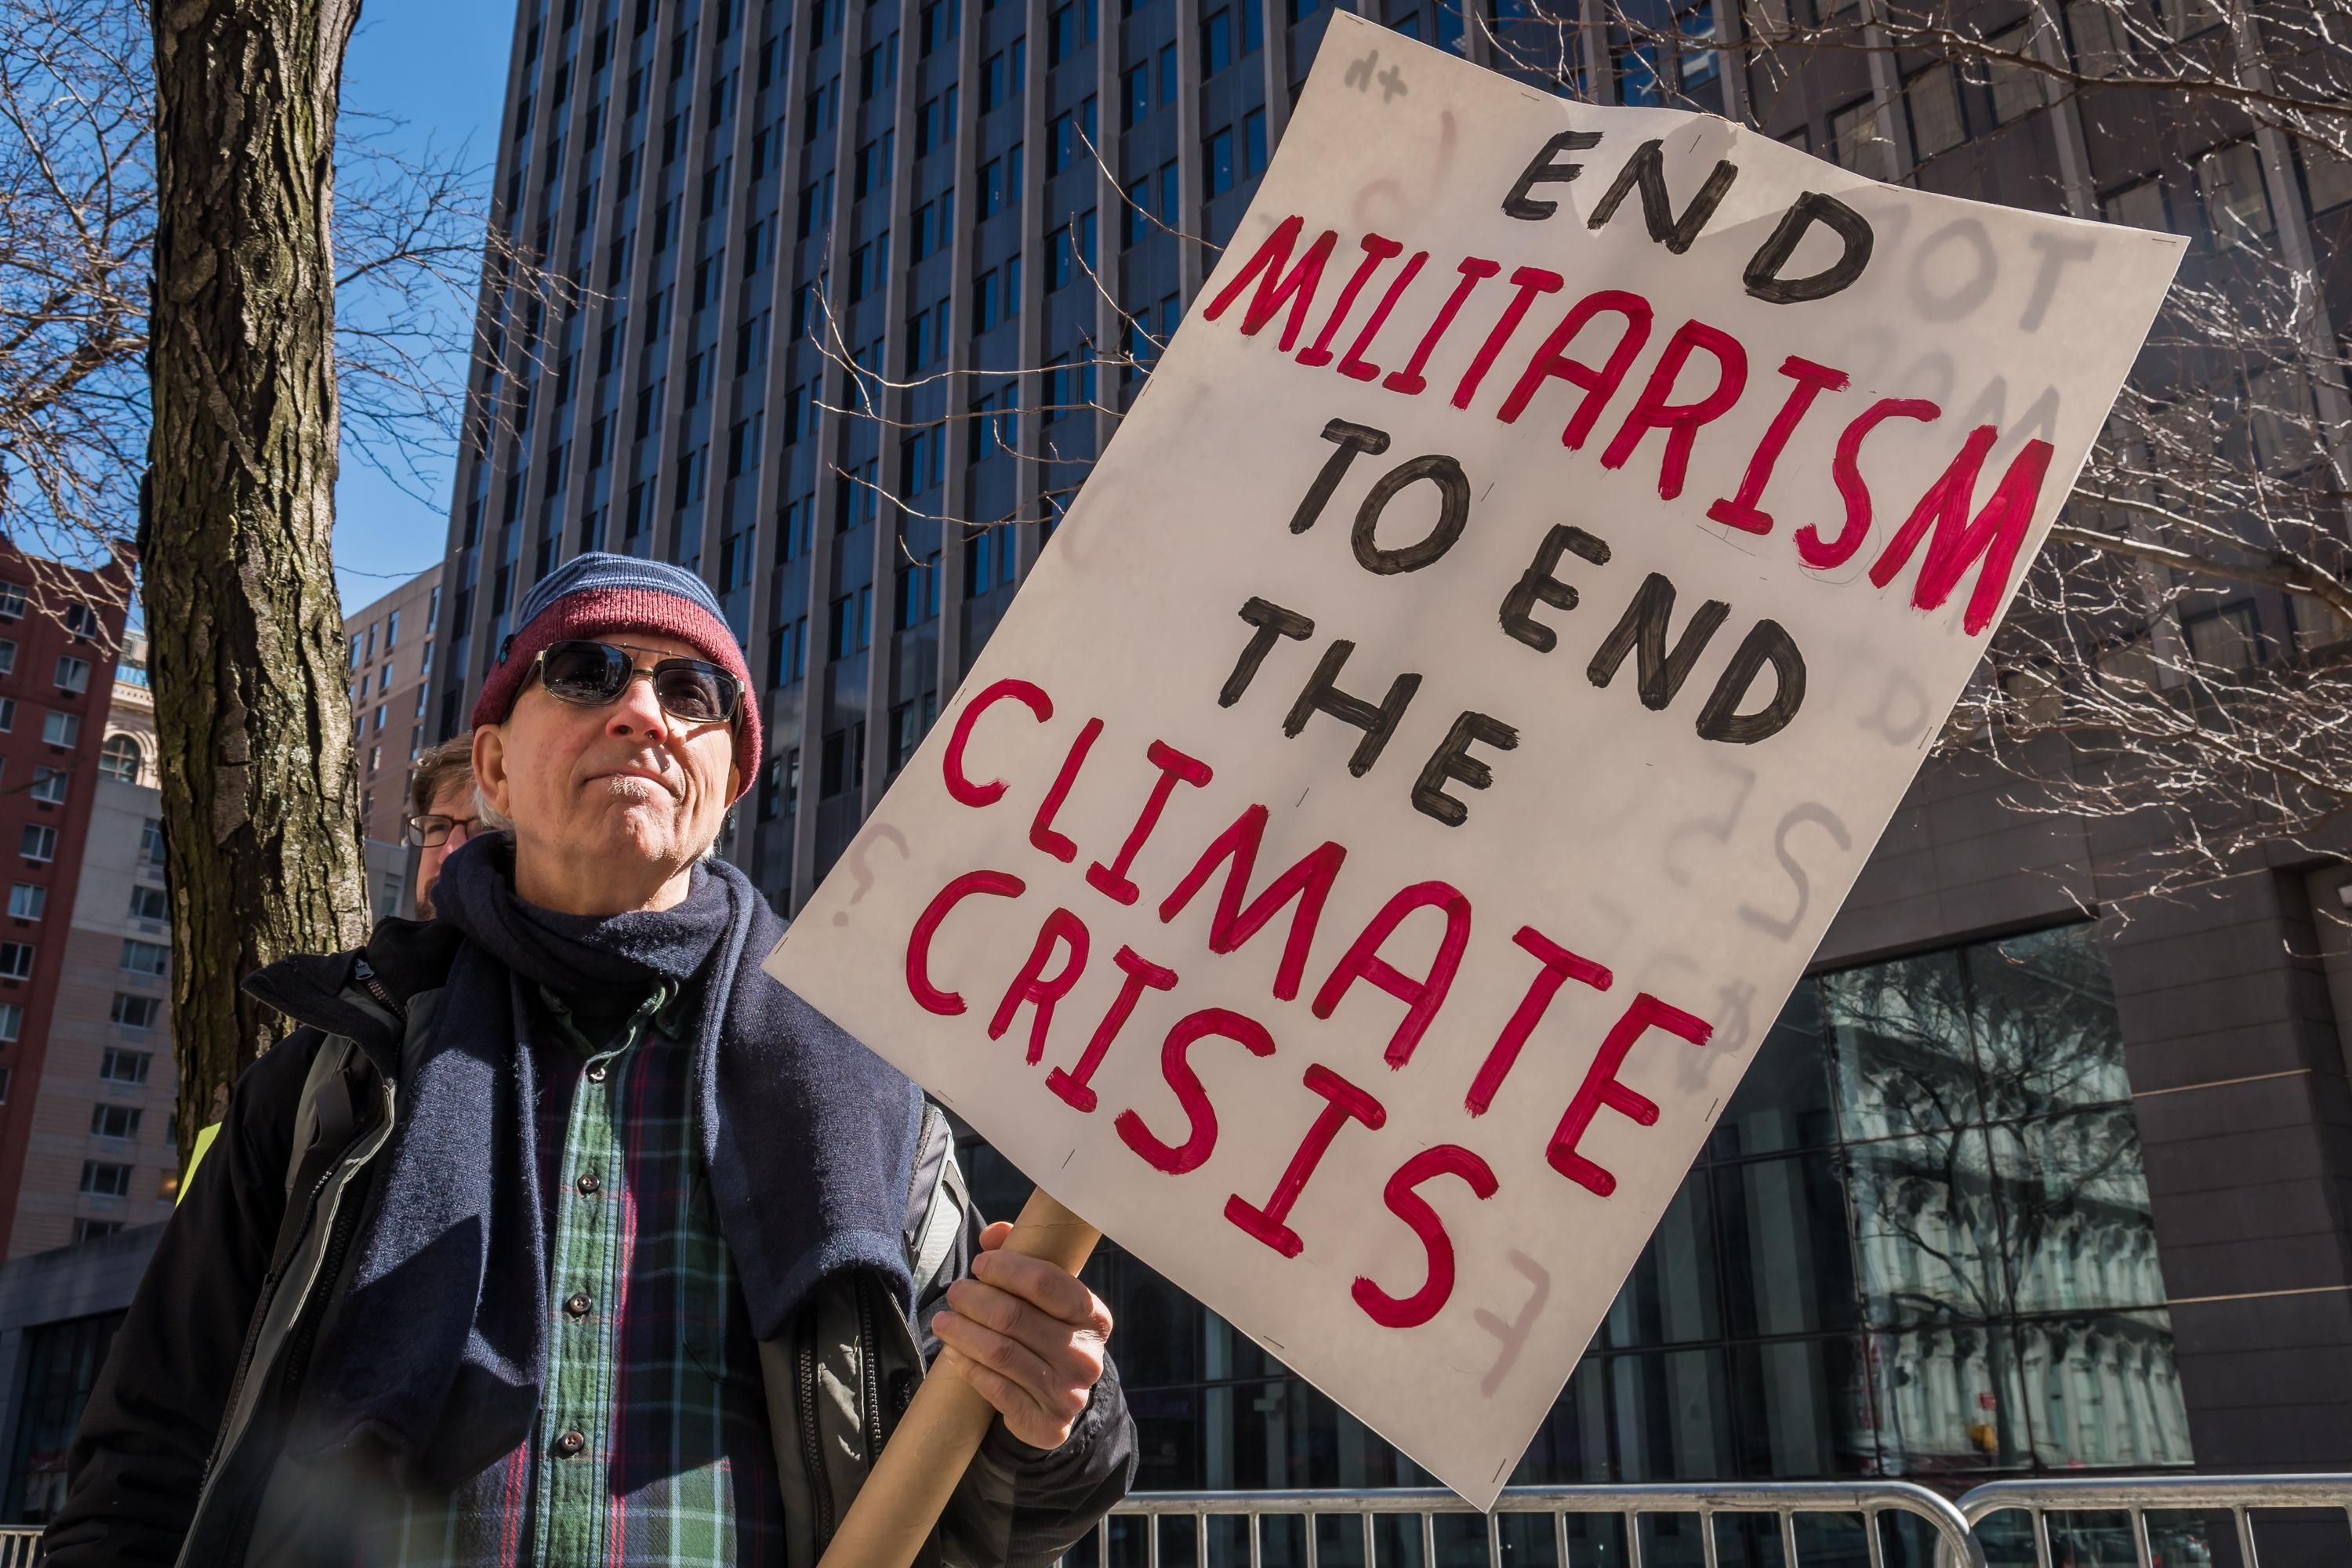 end_militarism_climate_crisis